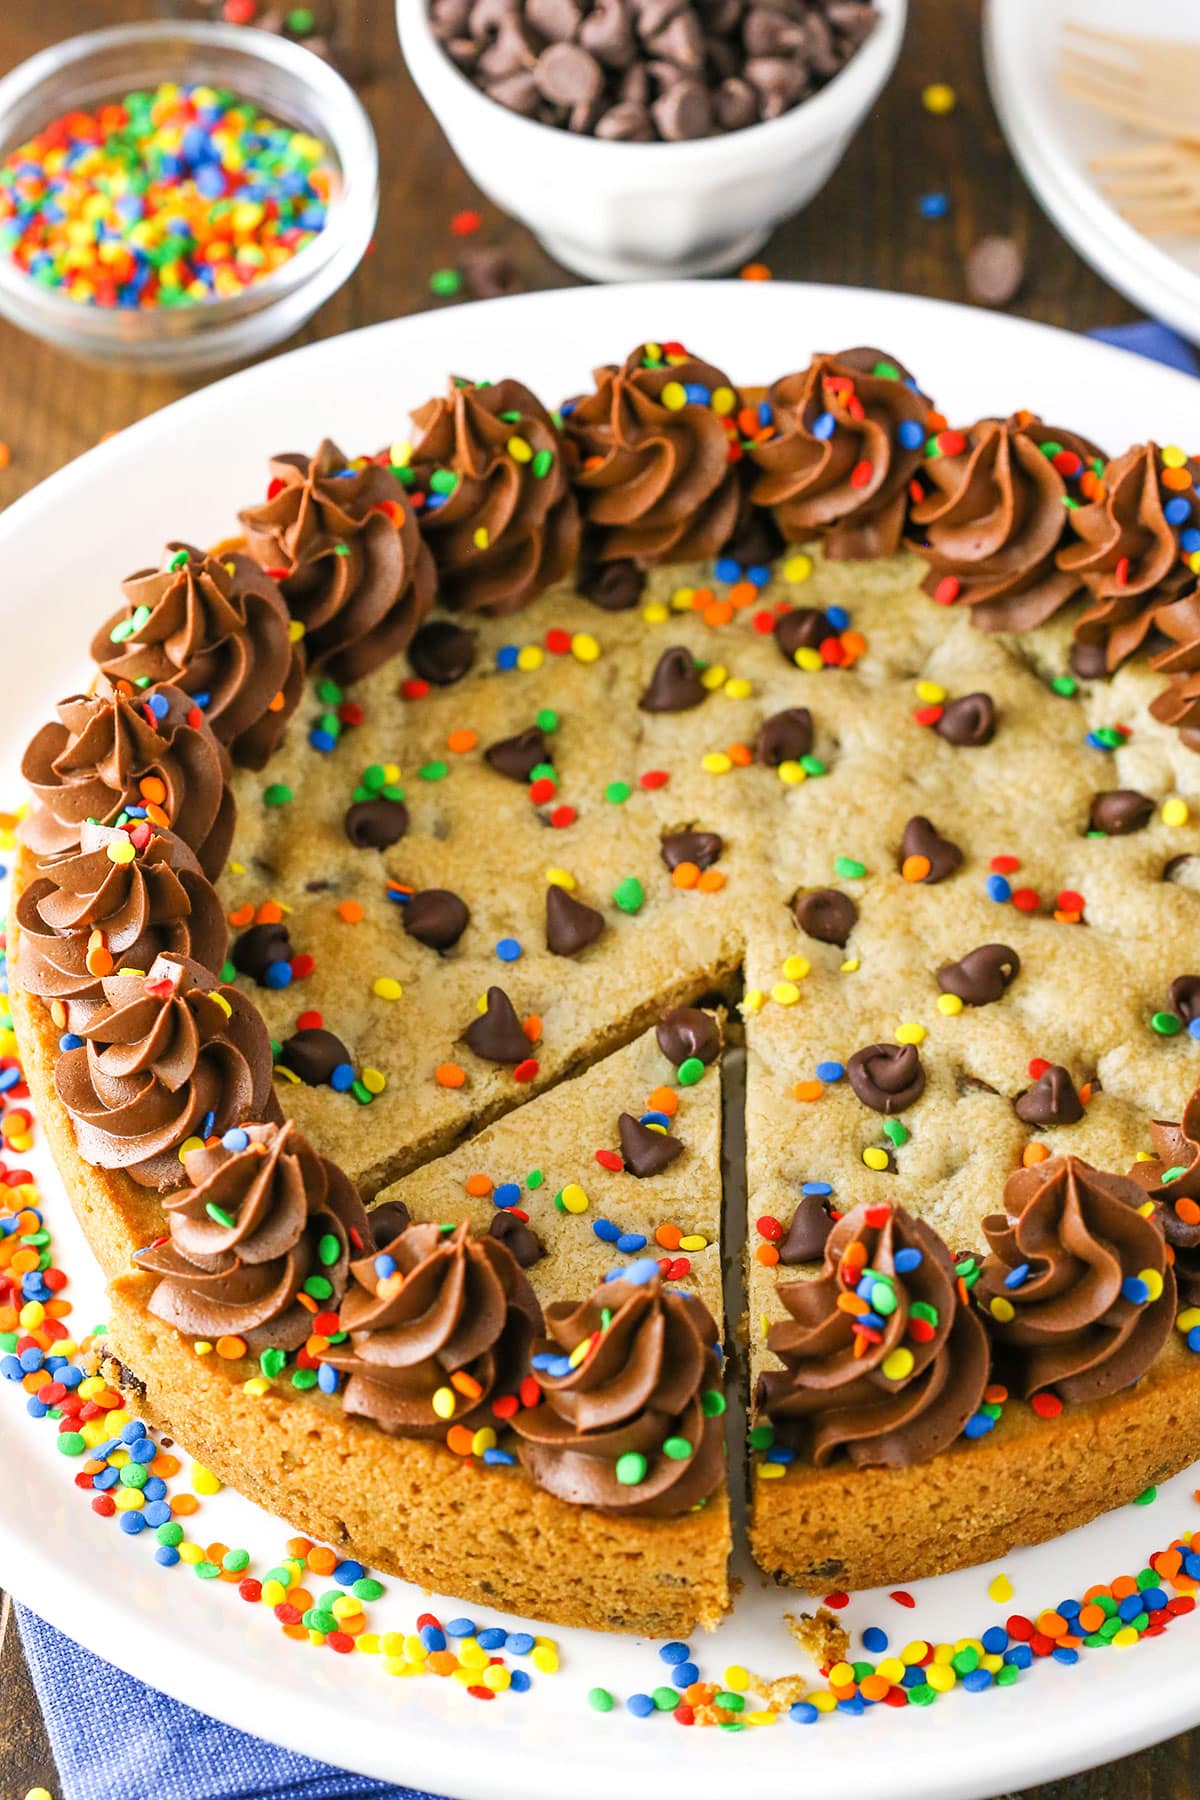 https://www.lifeloveandsugar.com/wp-content/uploads/2023/05/Chocolate-Chip-Cookie-Cake3E.jpg